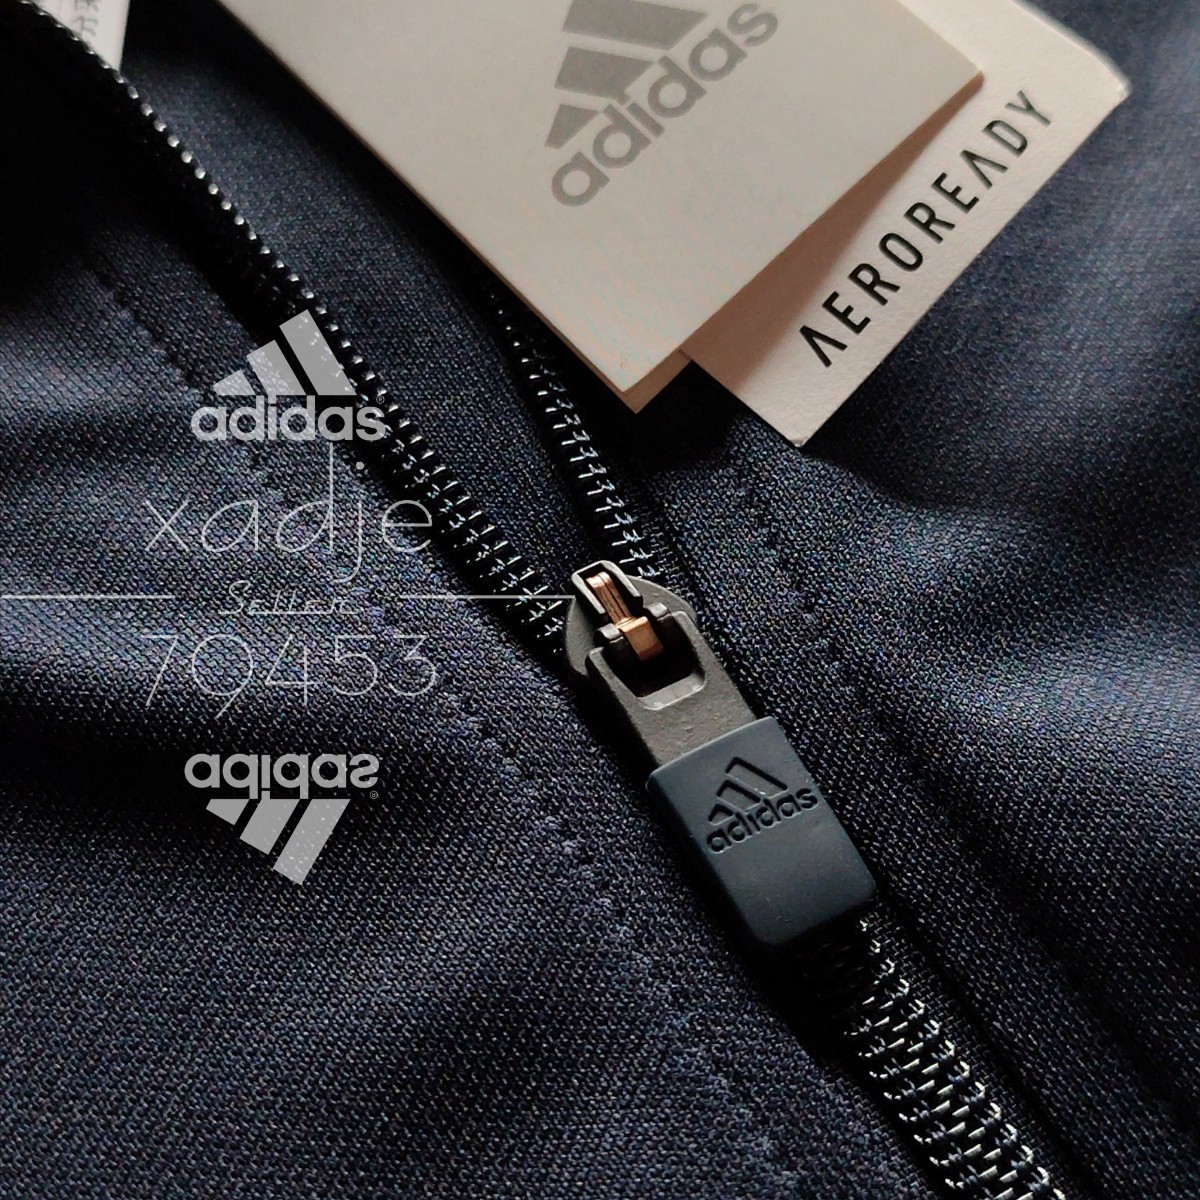 新品 正規品 adidas アディダス 上下セット セットアップ ジャージ 紺 ネイビー 白 三本ライン 裾ファスナー付き 薄手 XO 2XL_画像4